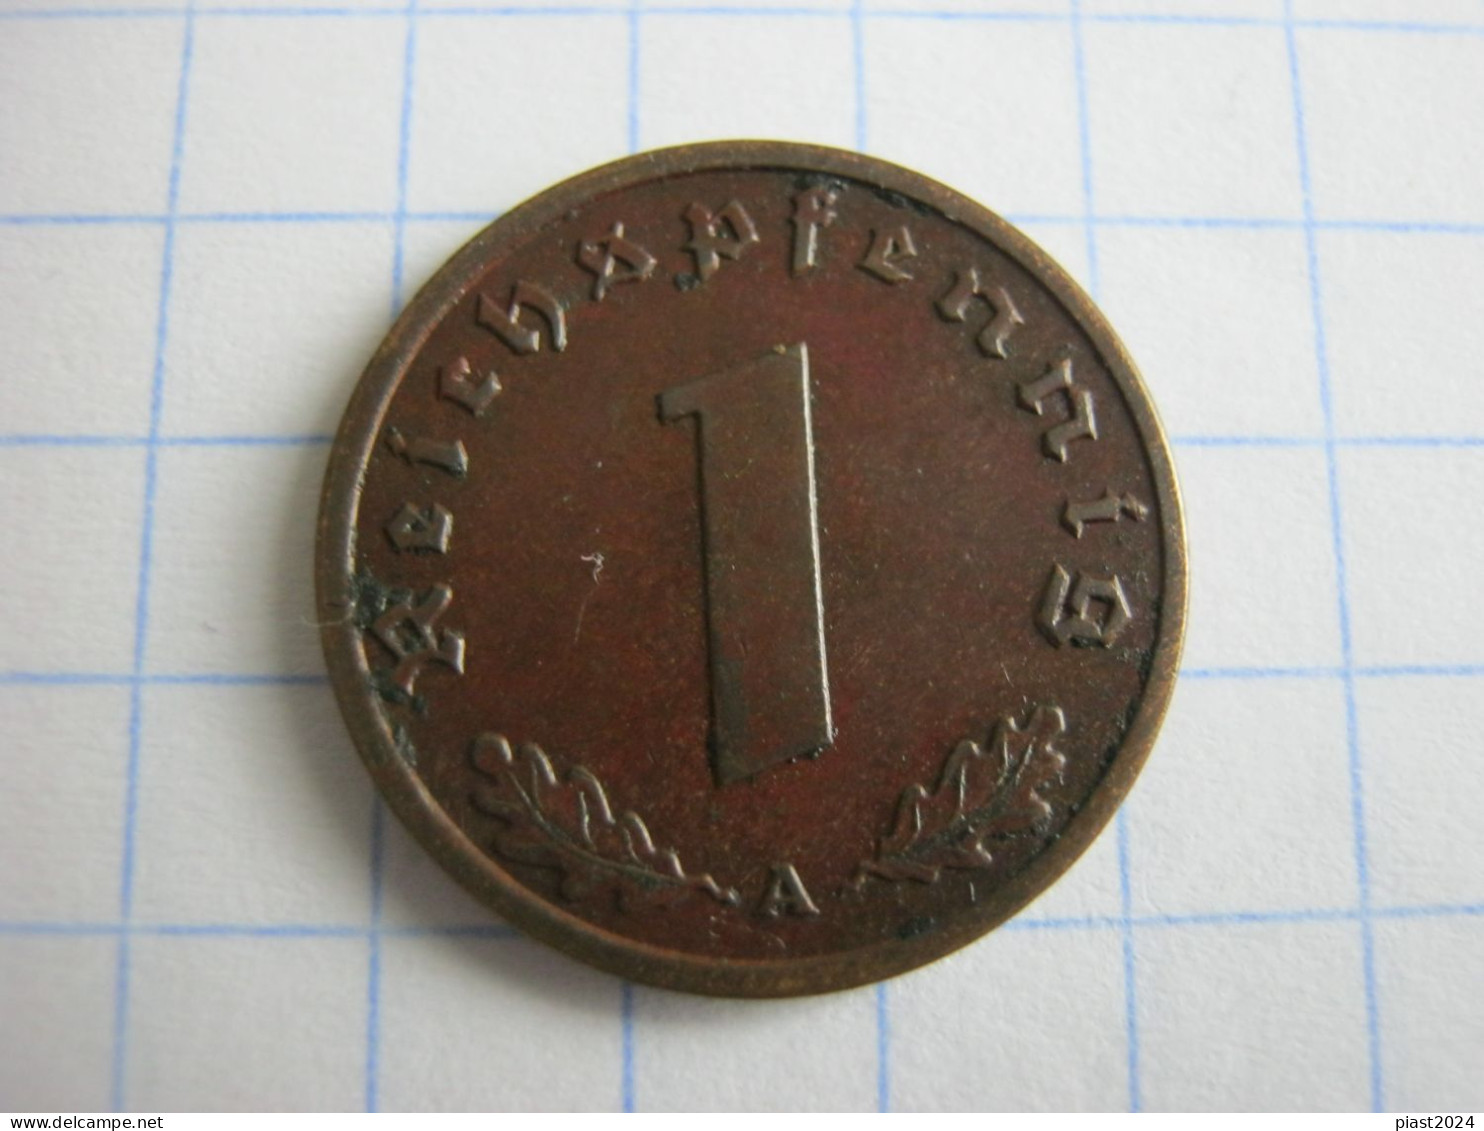 Germany 1 Reichspfennig 1939 A - 1 Reichspfennig